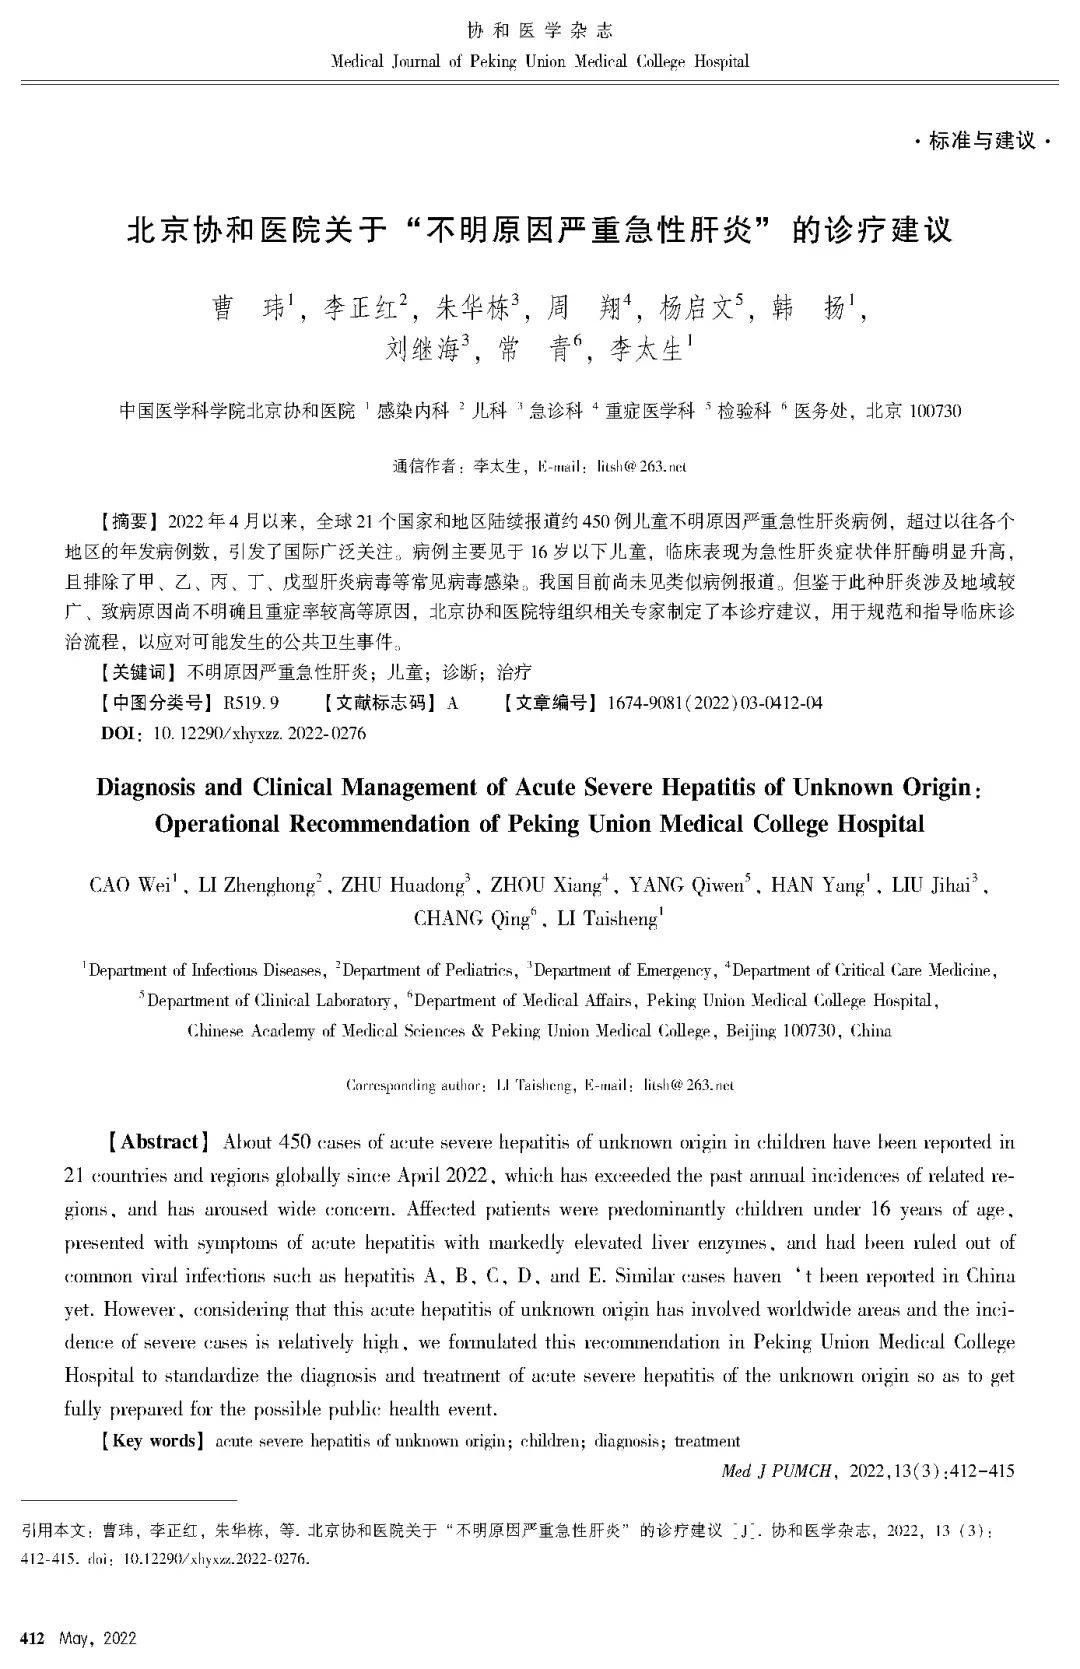 搜狐医要 | 北京协和医院：出现疑似“不明原因严重急新肝炎”如何应对？